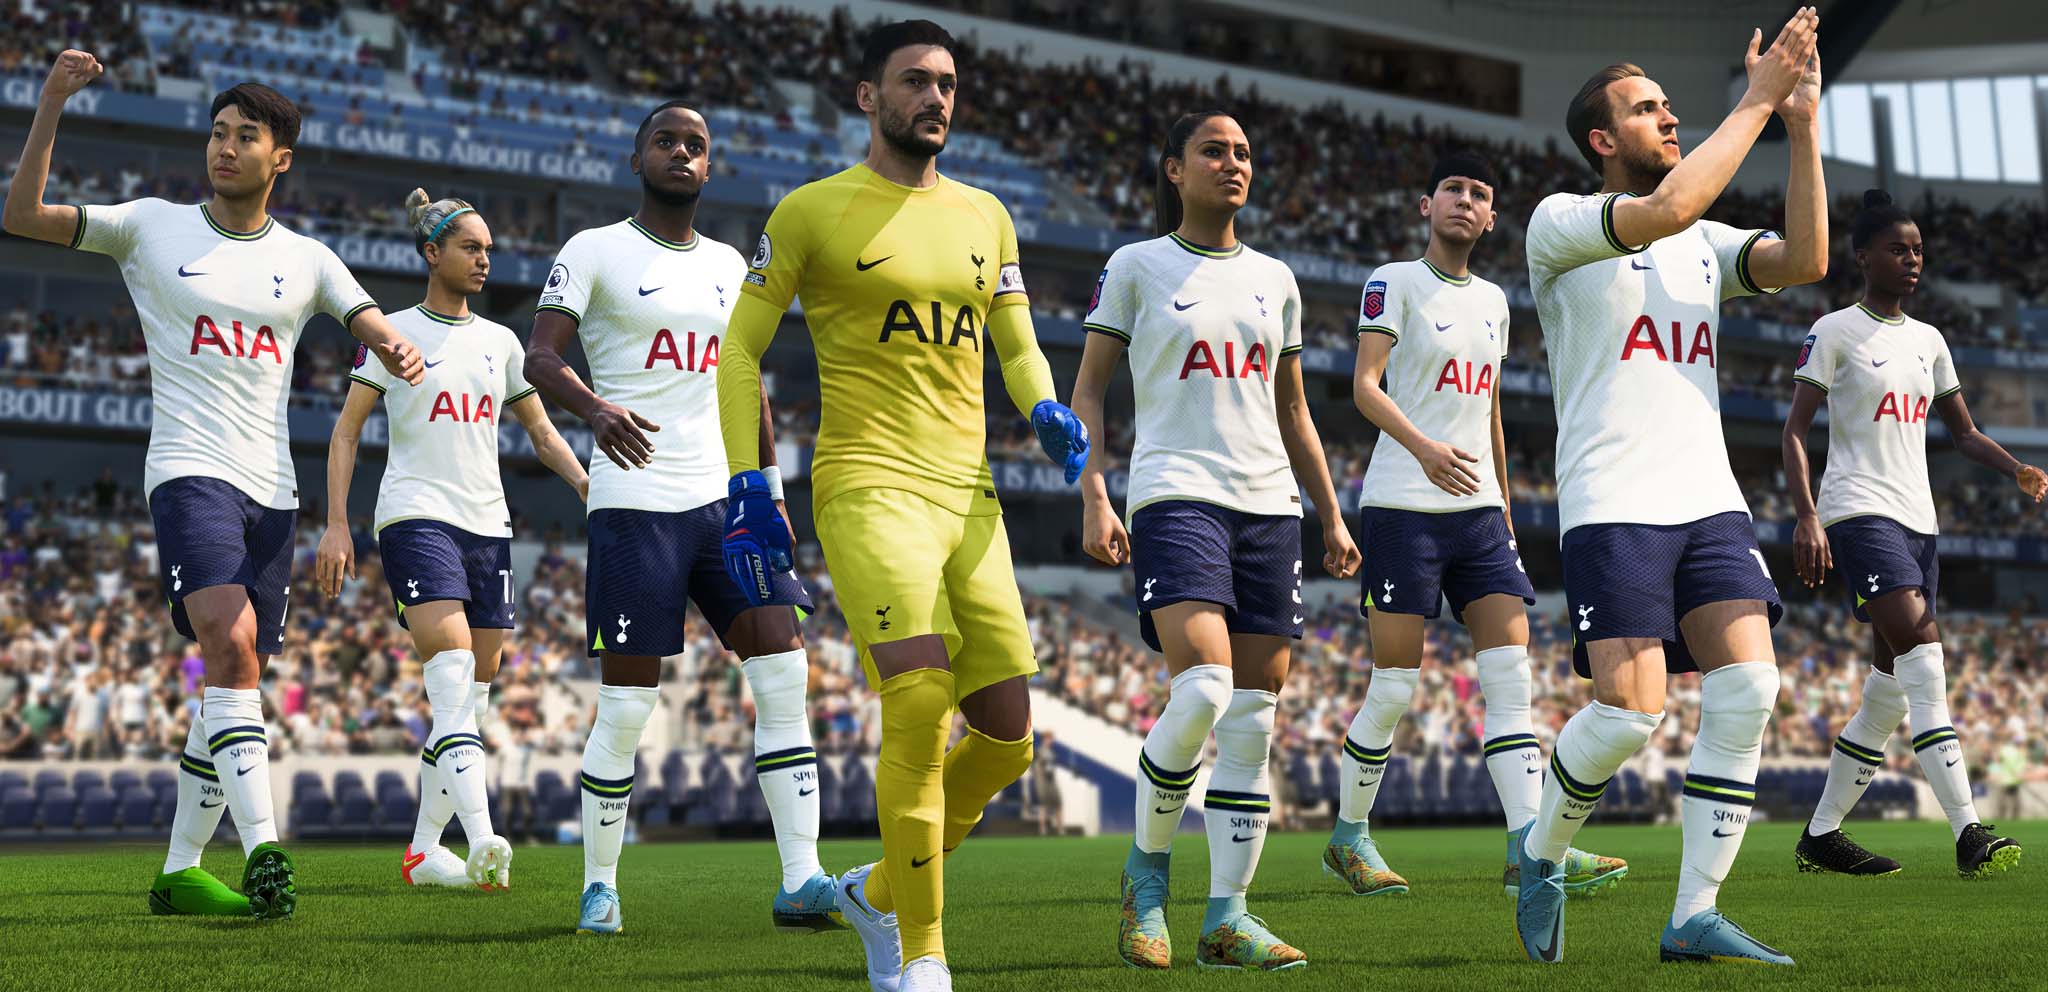 Tottenham Hotspur faz parceria com EA Sports para FIFA 13